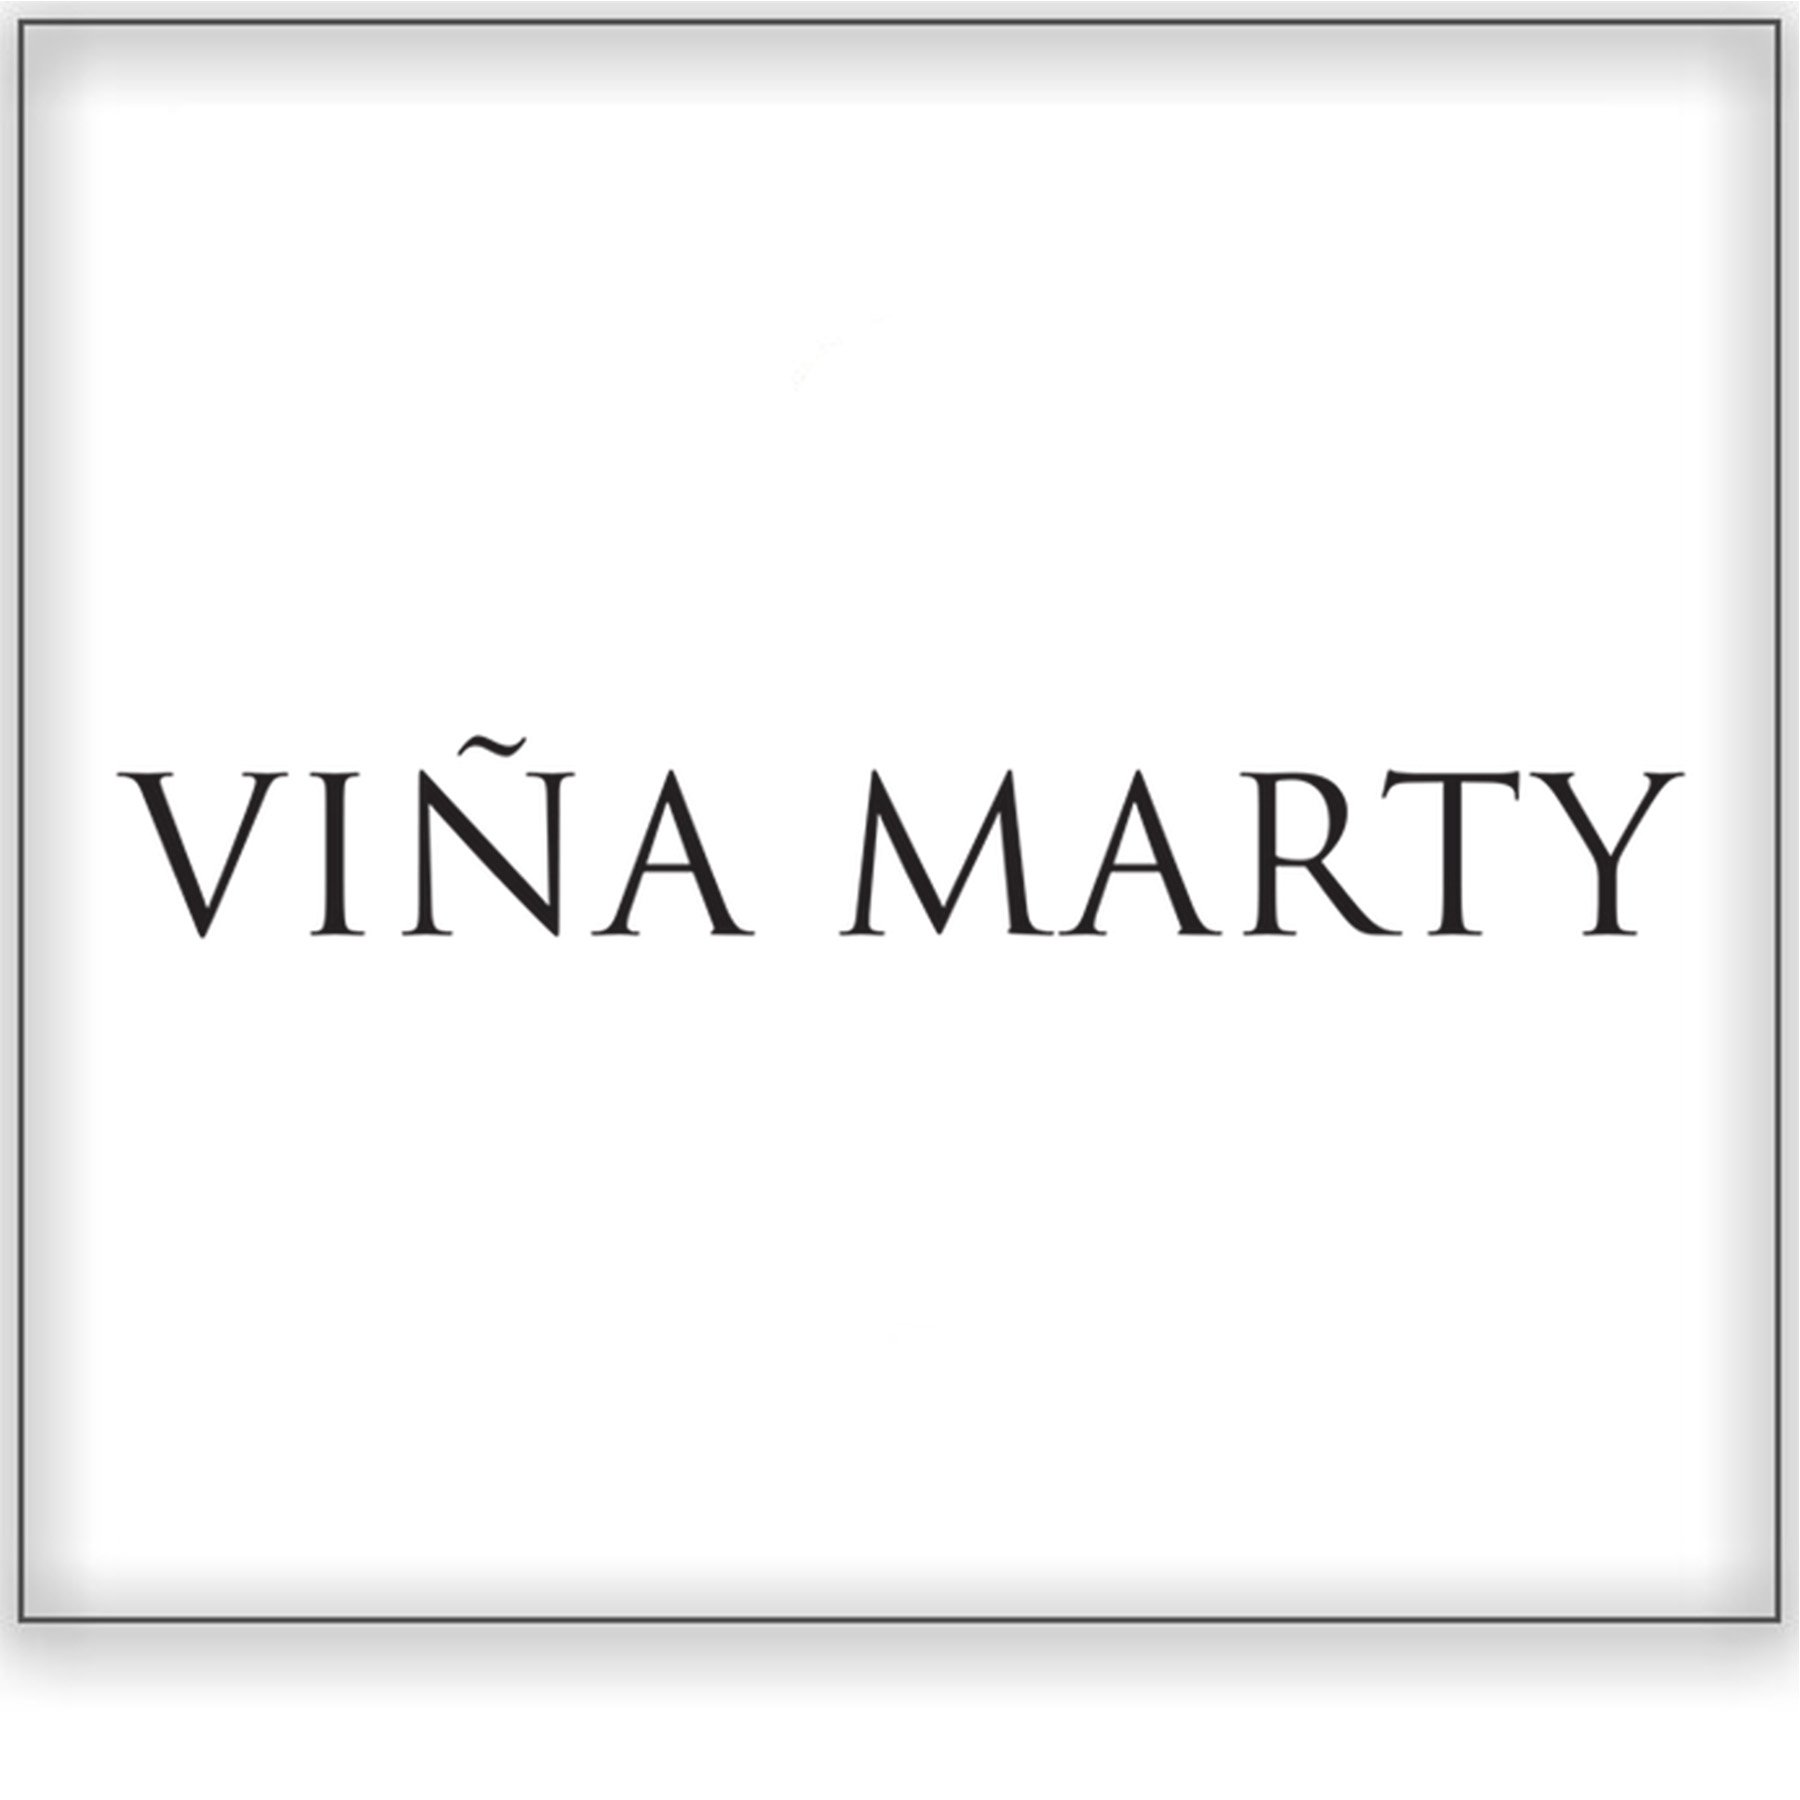 Vina Marty&lt;a href=/vina-marty&gt;Central Valley, Chile ➤&lt;/a&gt;